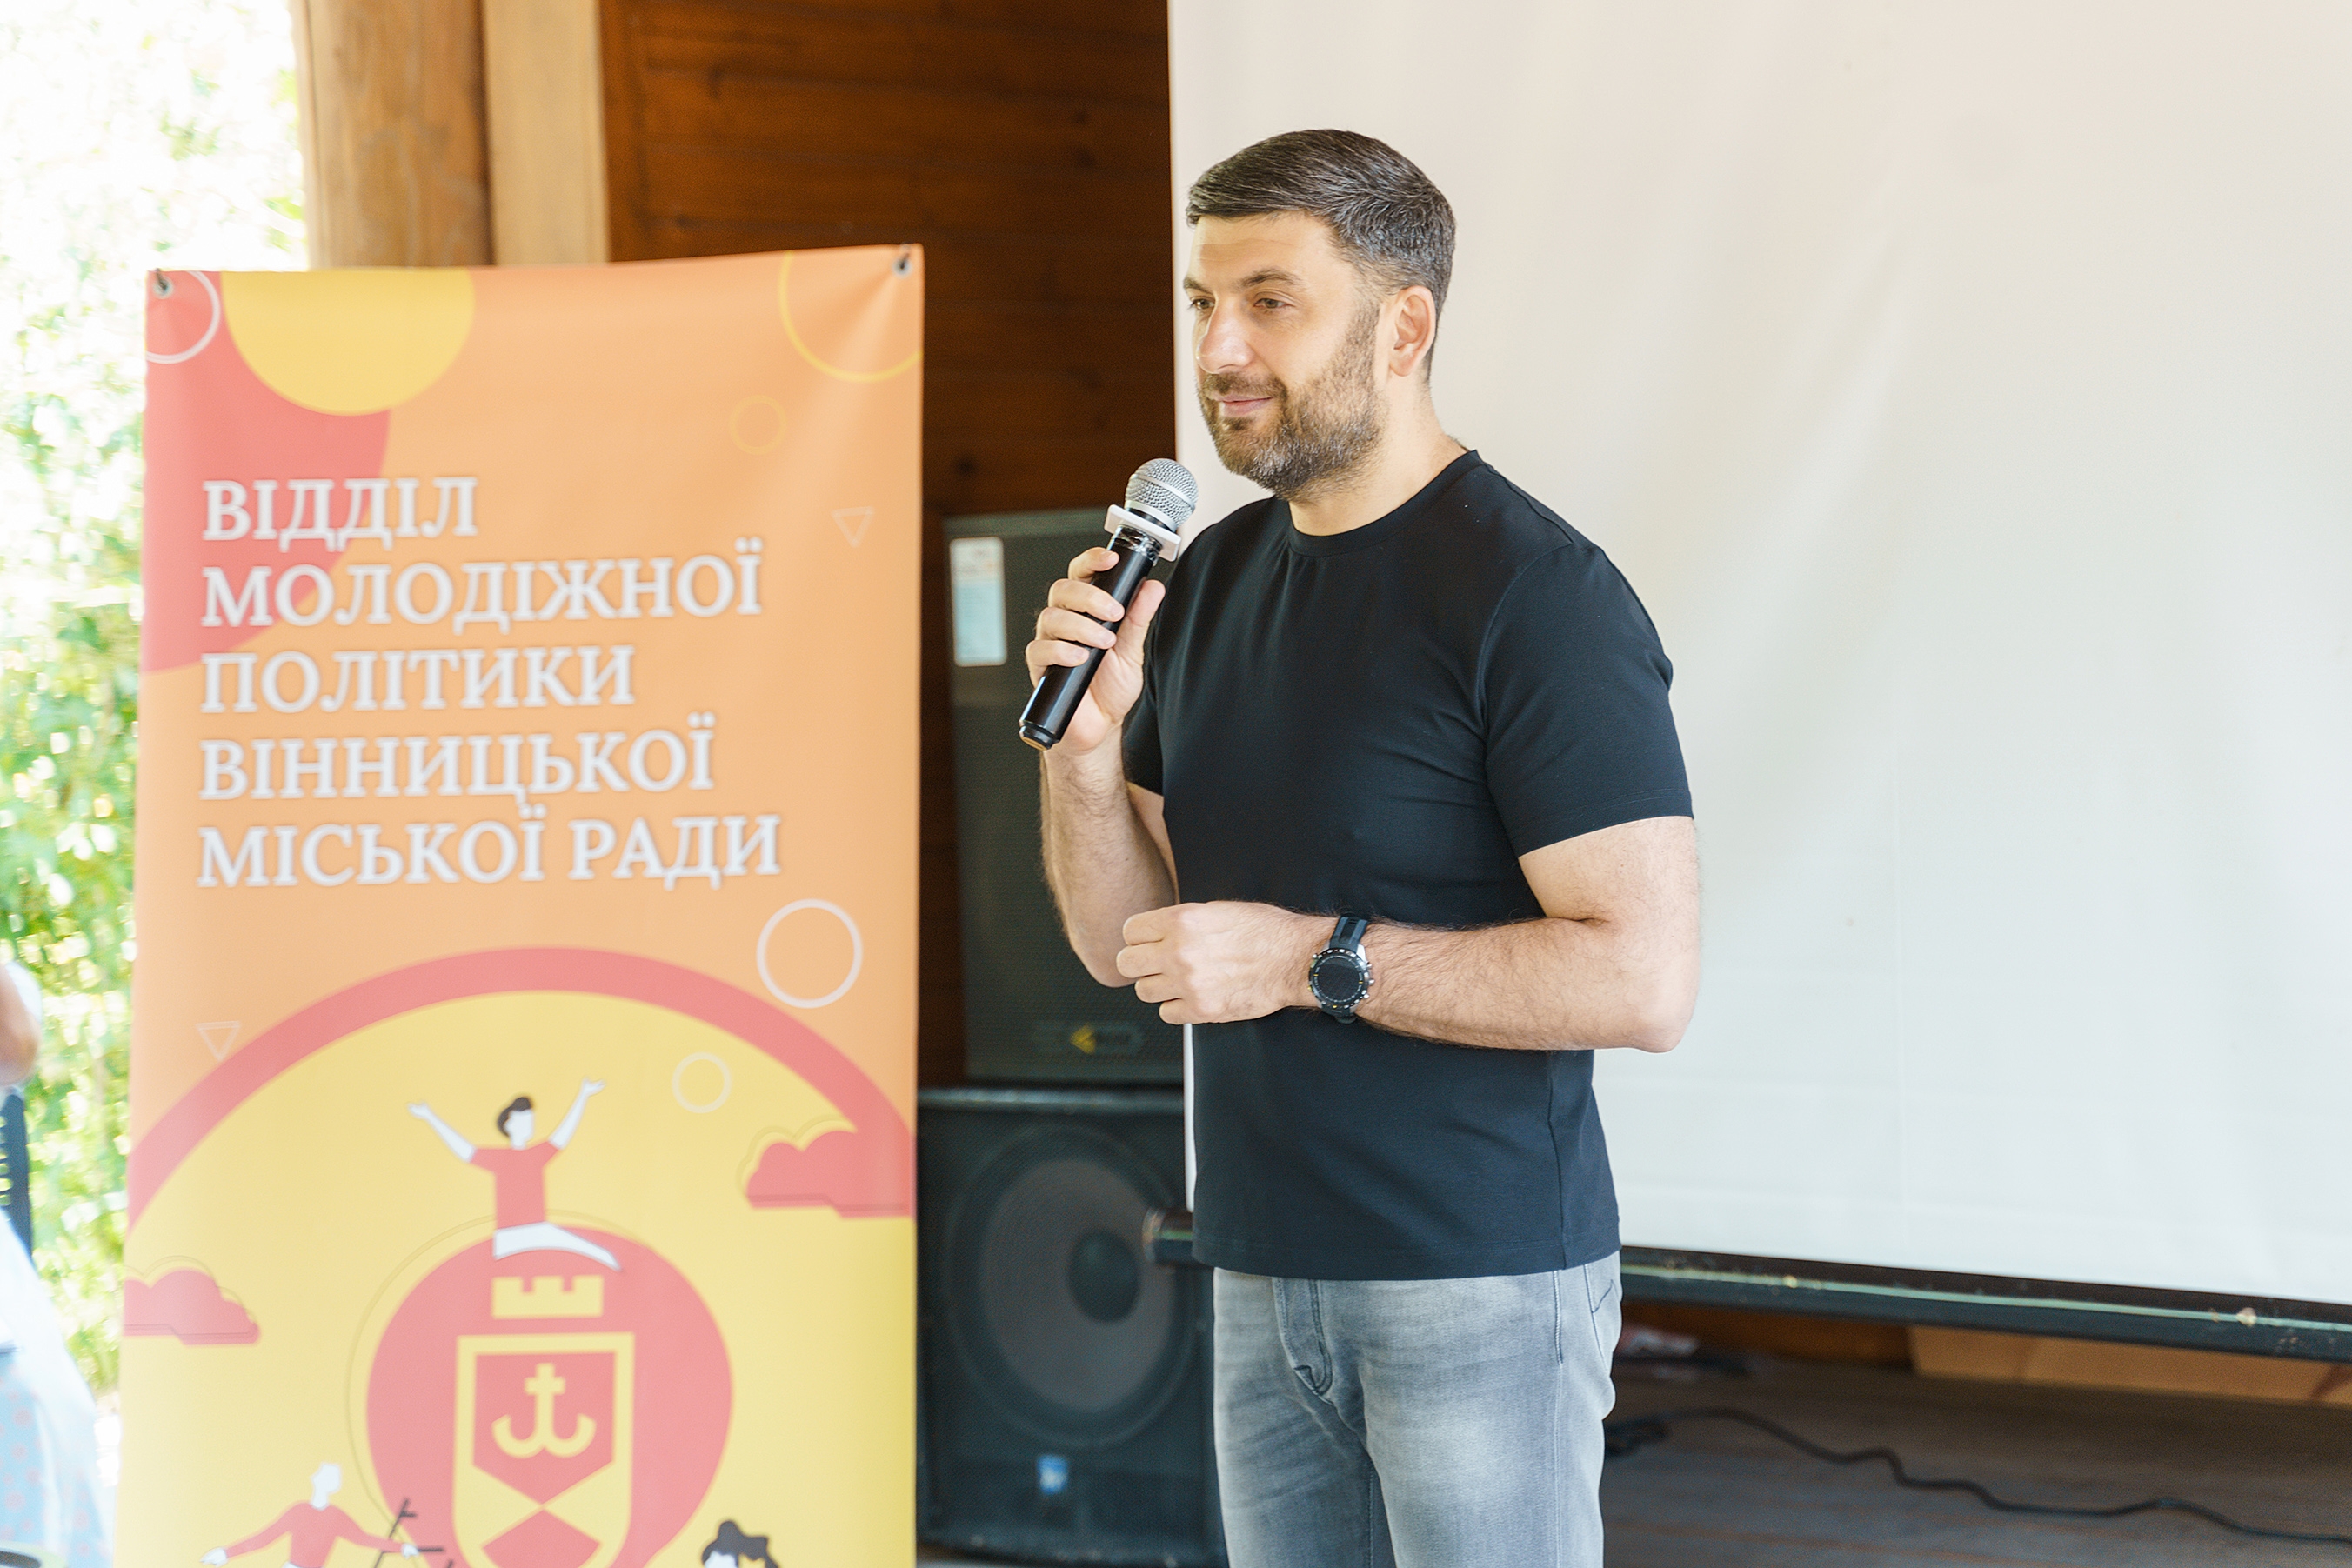 Форум "Молодь у післявоєнному відновленні України" розпочався у Вінниці